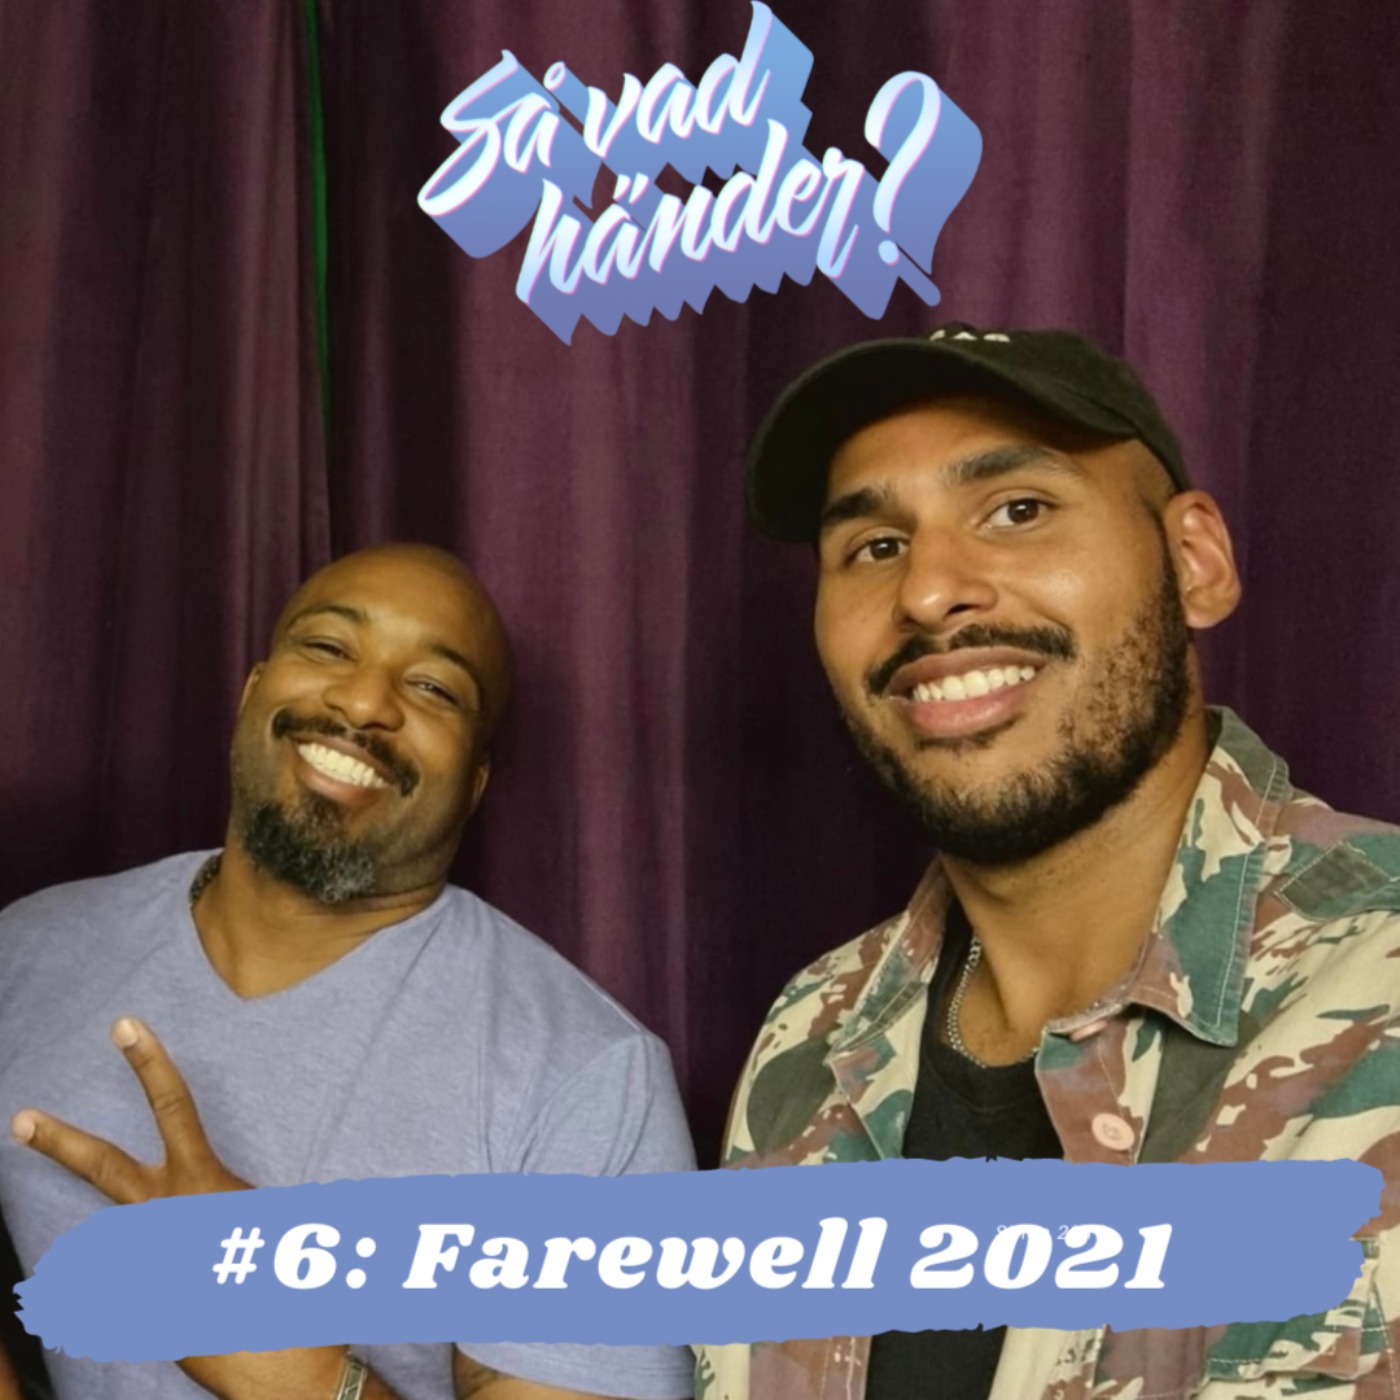 Så vad händer? #6: Farewell 2021